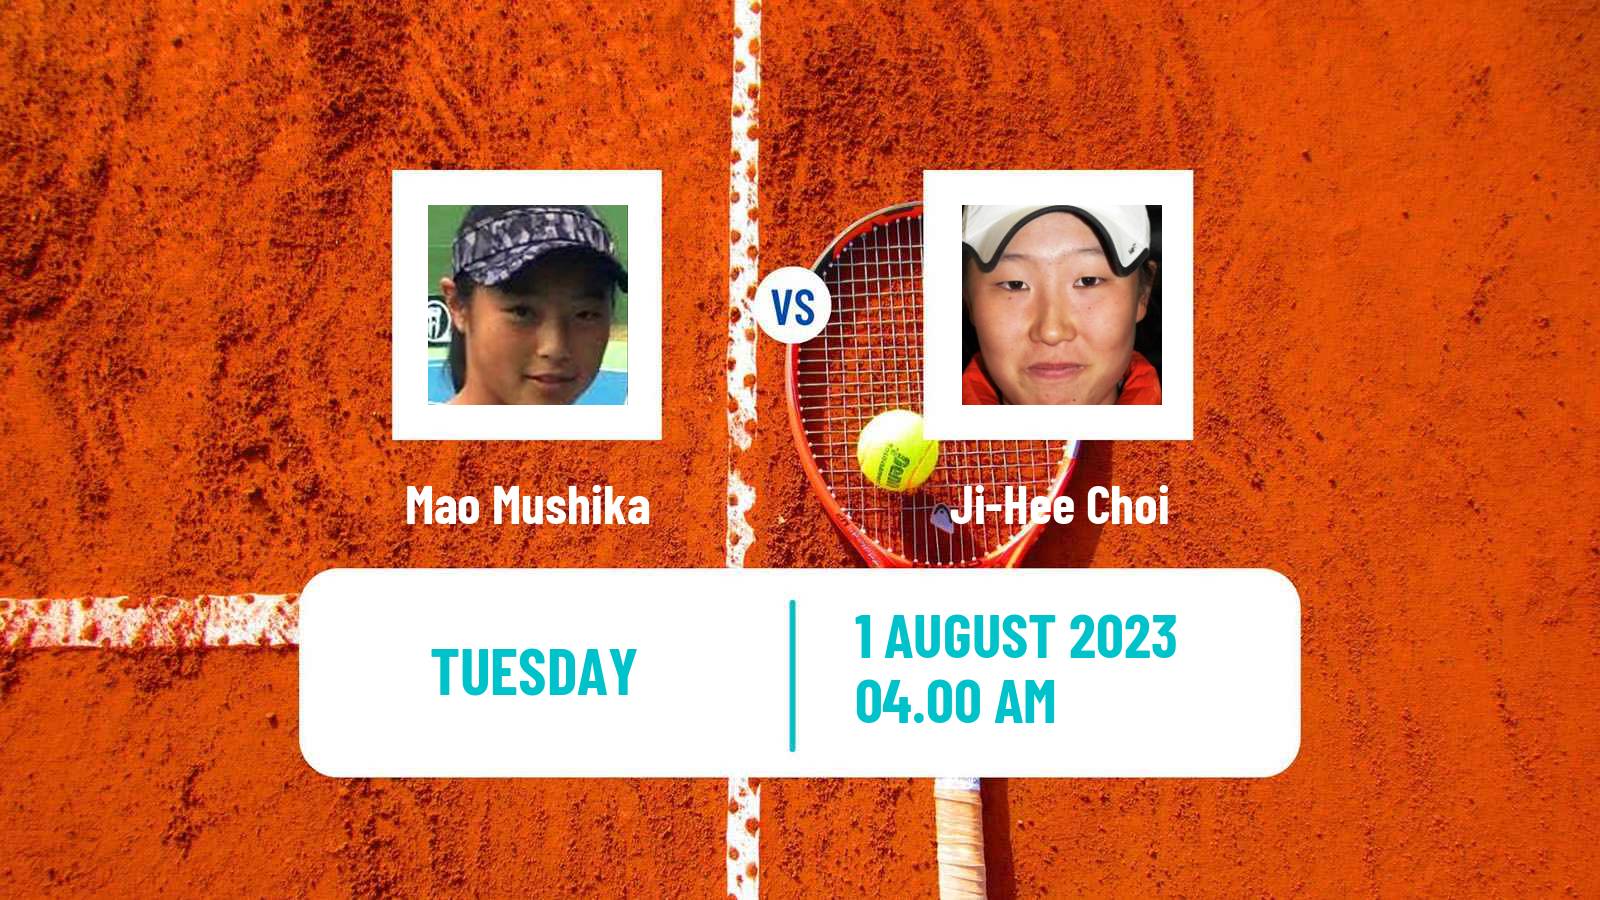 Tennis ITF W15 Sapporo 2 Women 2023 Mao Mushika - Ji-Hee Choi